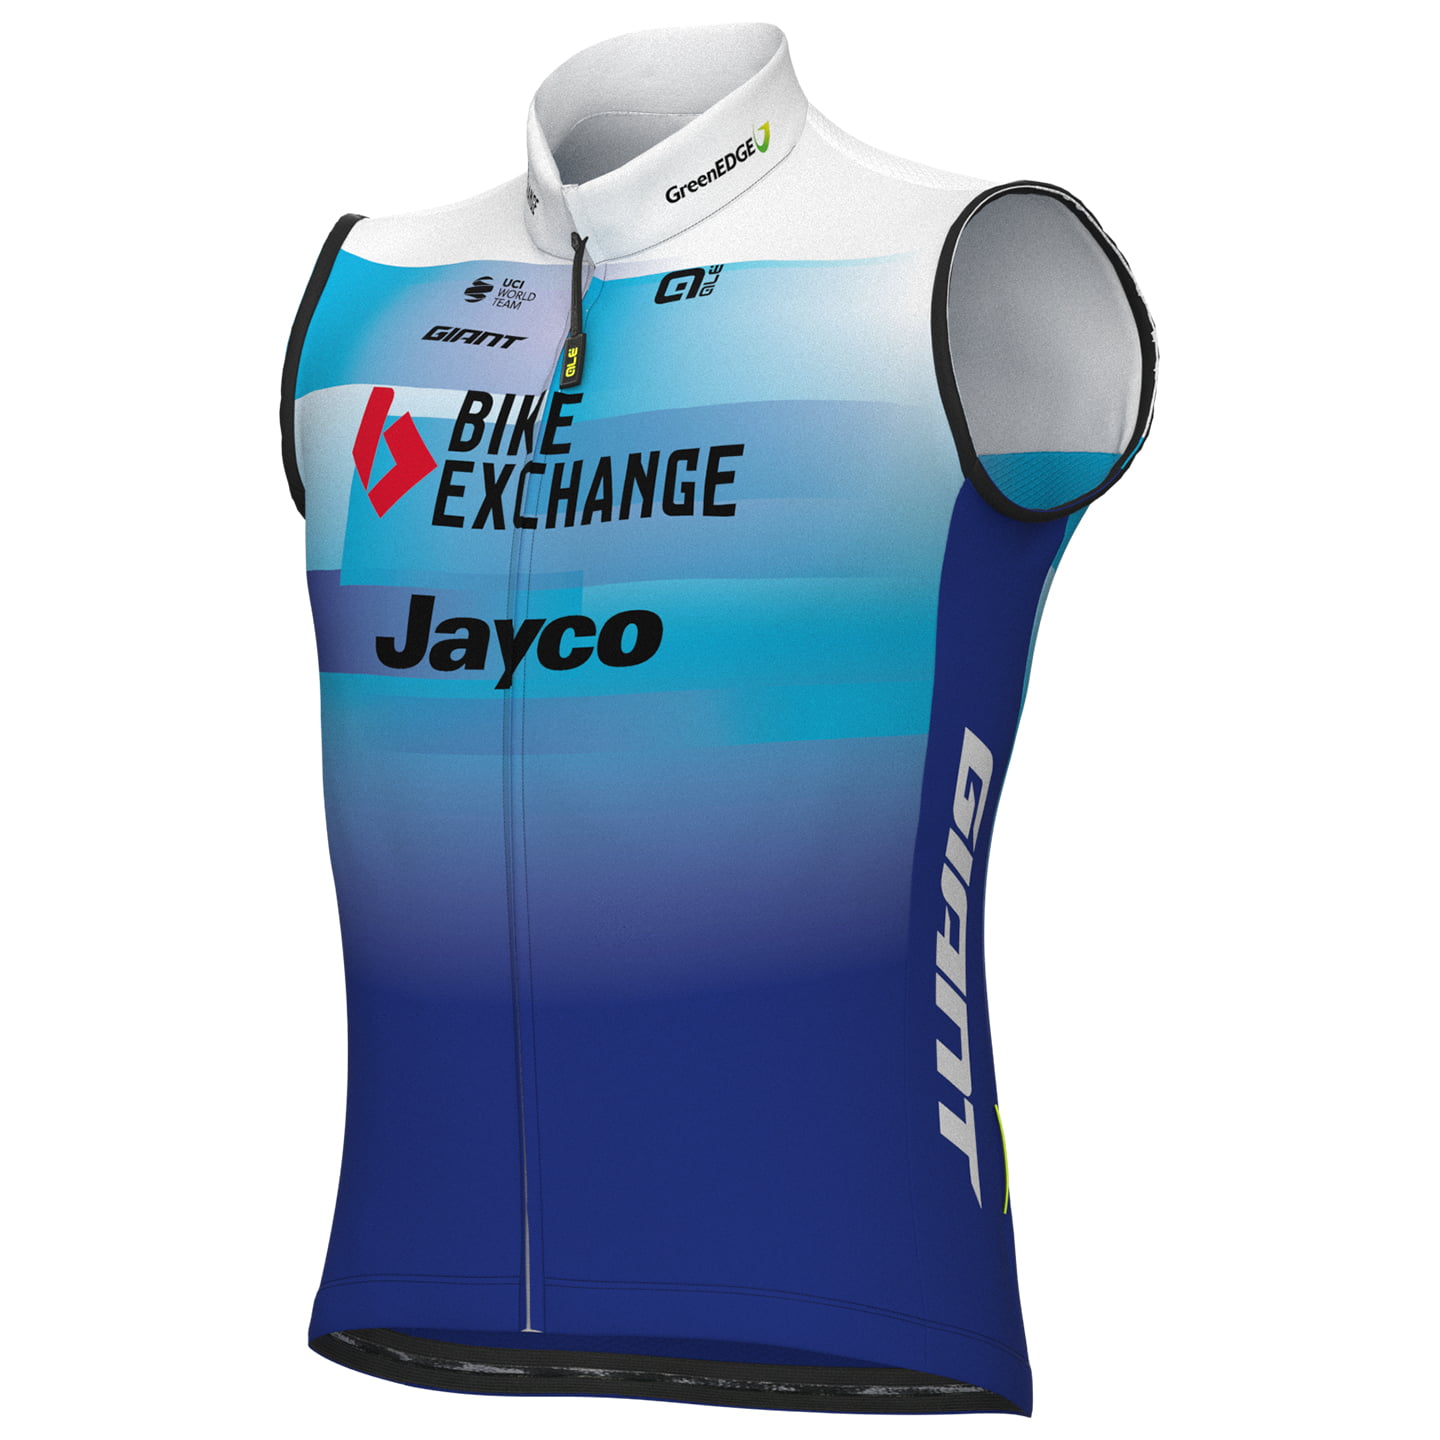 TEAM BIKEEXCHANGE-JAYCO 2022 Wind Vest, for men, size 2XL, Bike vest, Cycling gear